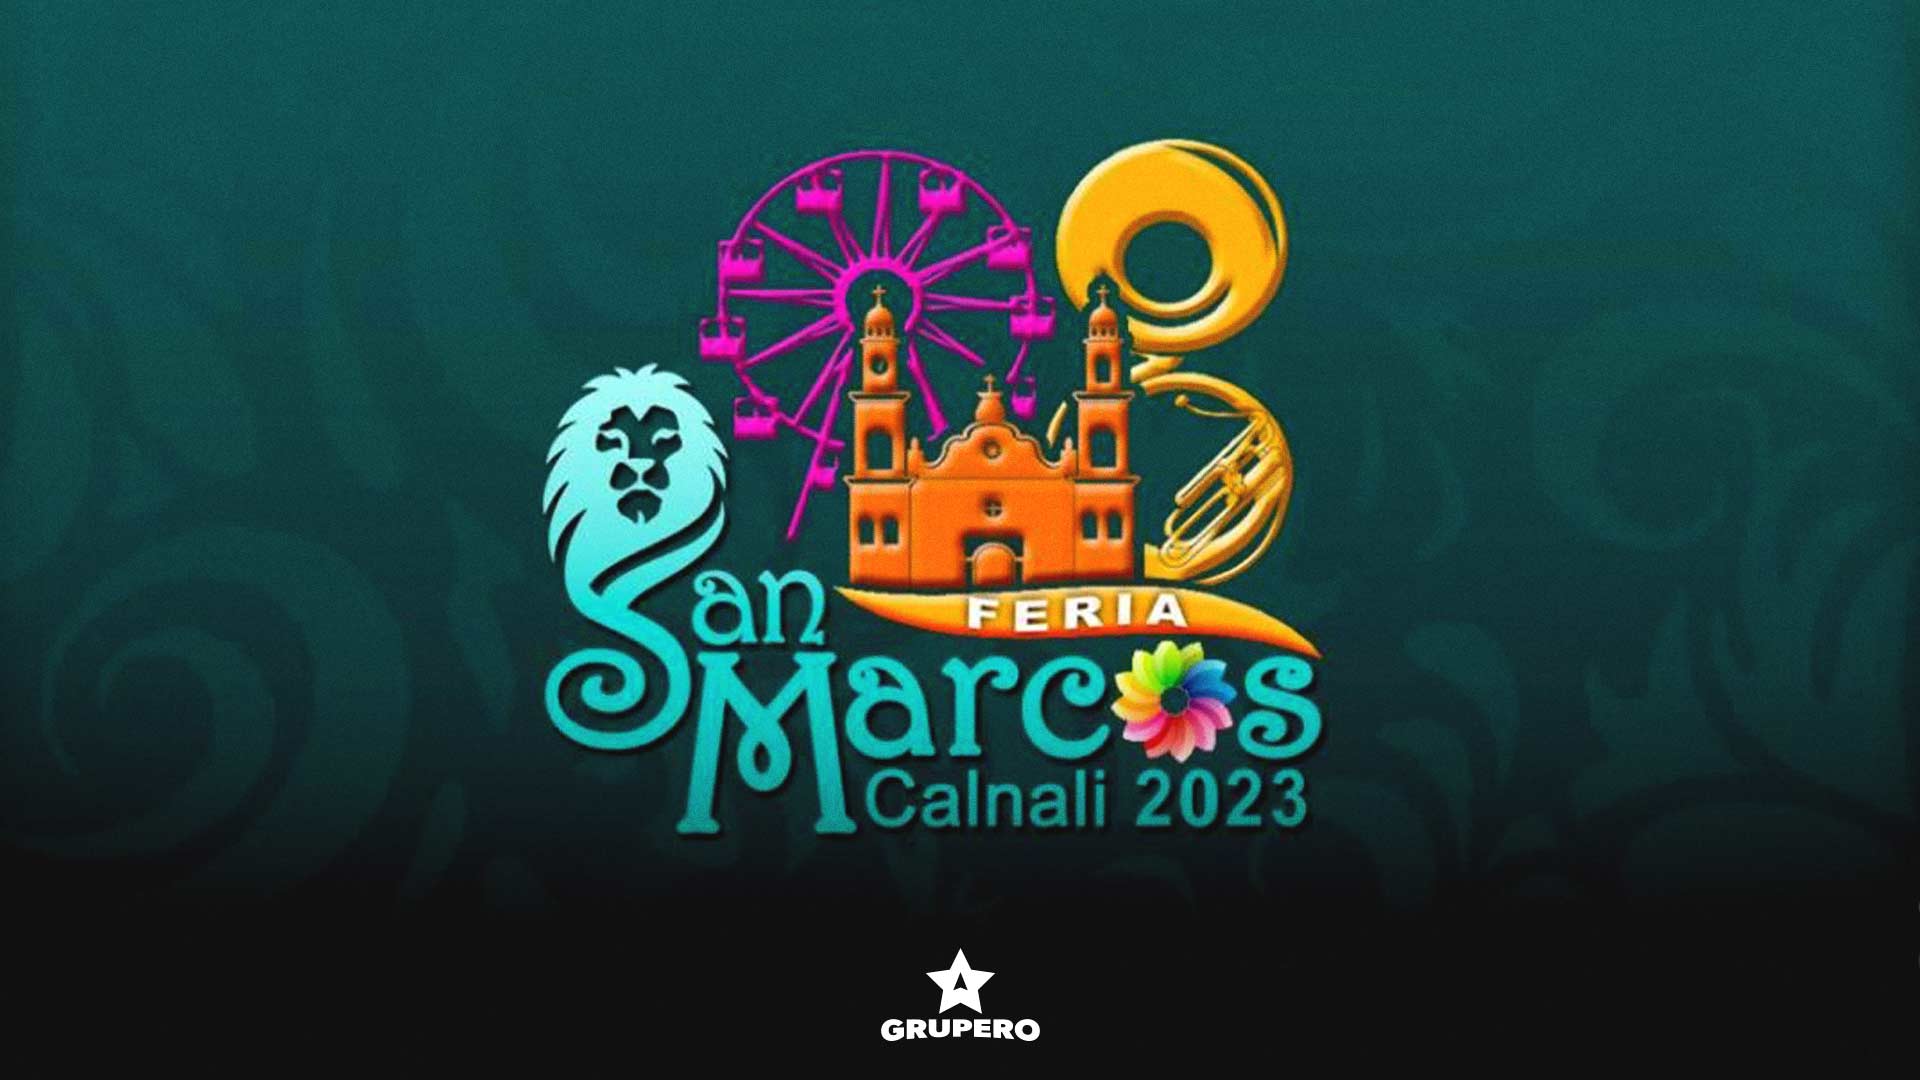 Feria San Marcos Calnali 2023